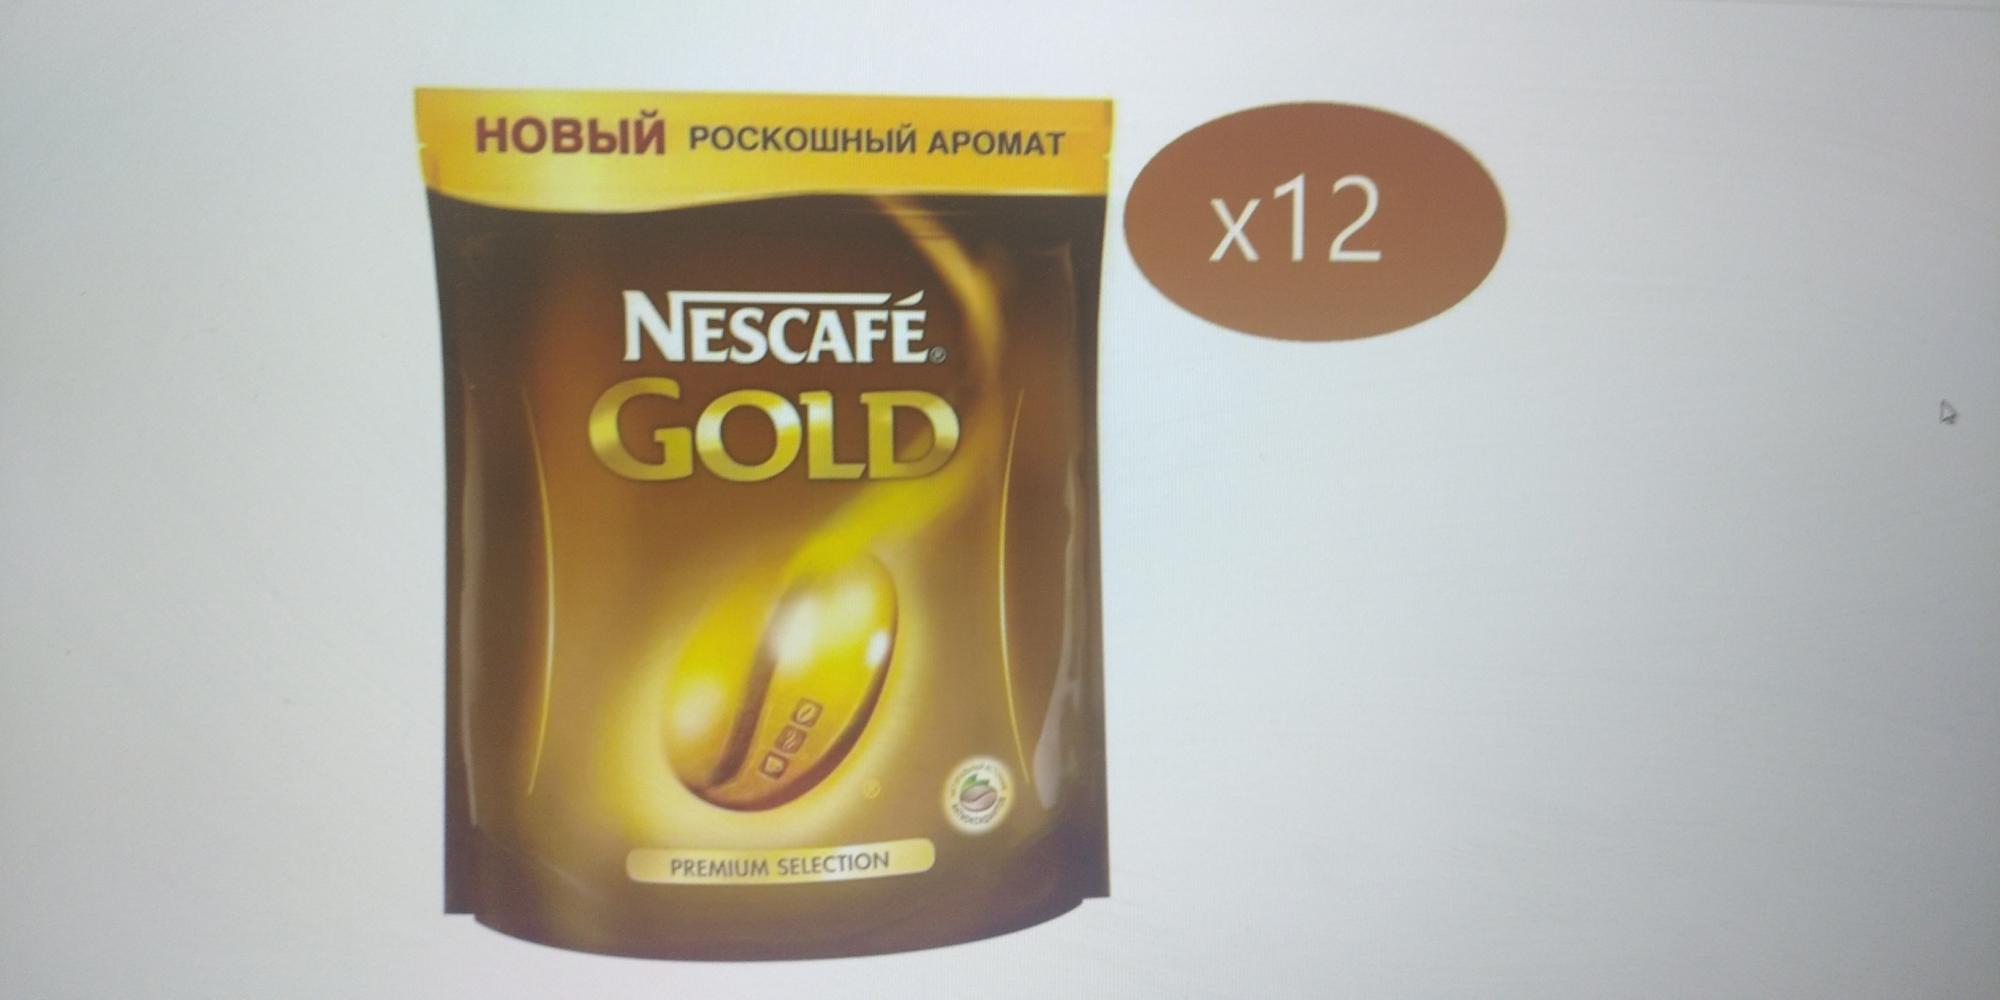 Кофе нескафе 190 грамм. Nescafe Gold 60 гр. Nescafe Gold 900 гр купить. Nescafe Gold кофе пакет 60 грамм. Кофе Нескафе Голд 190 гр в пакете.